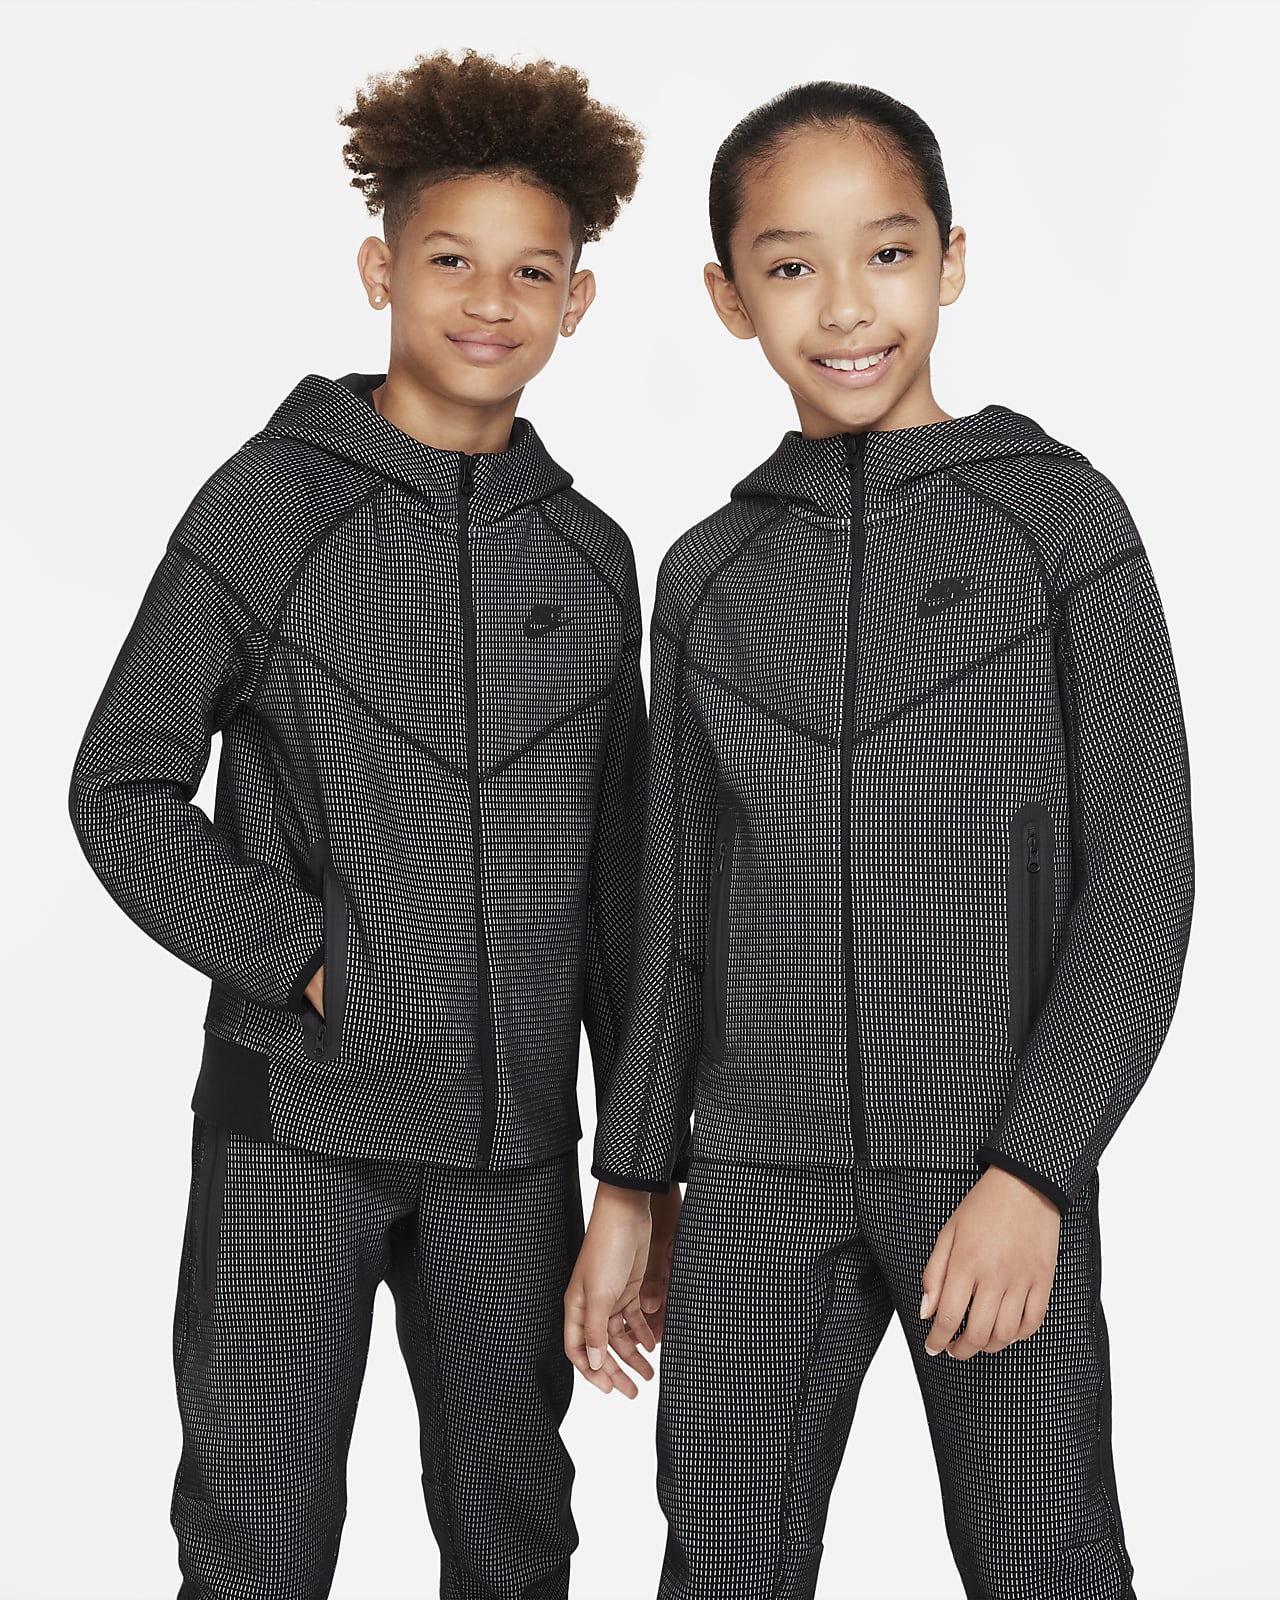 Nike Tech Fleece Sportswear Survêtement Enfants Noir 